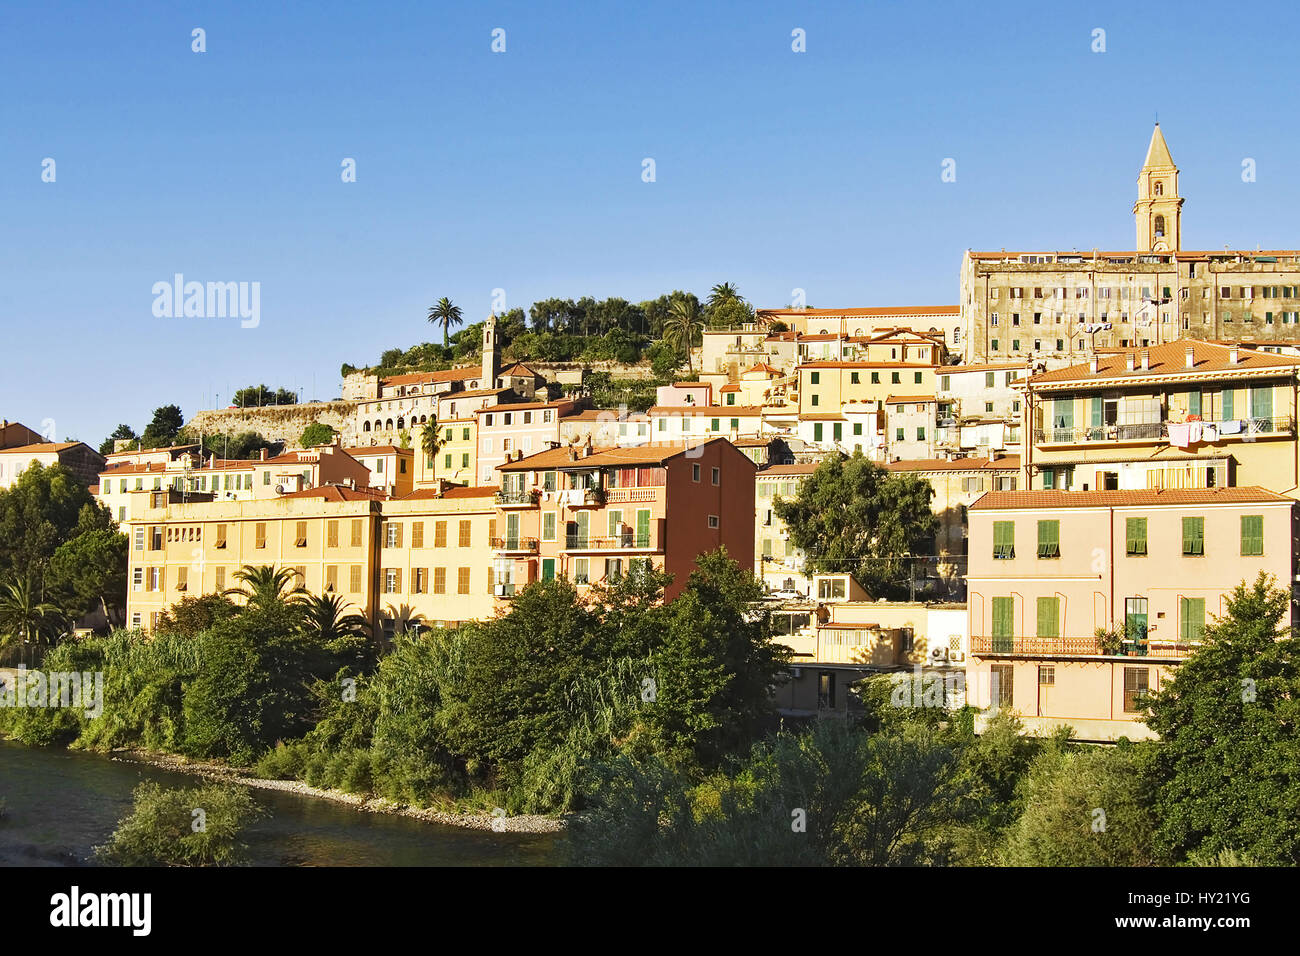 Die Altstadt von Ventimiglia in Ligurien, Italien. Der mittelalterliche Ort erhebt sich Ã¼ber dem Fluss Roia auf einem HÃ¼gel, auf dem Reste der alten Stock Photo